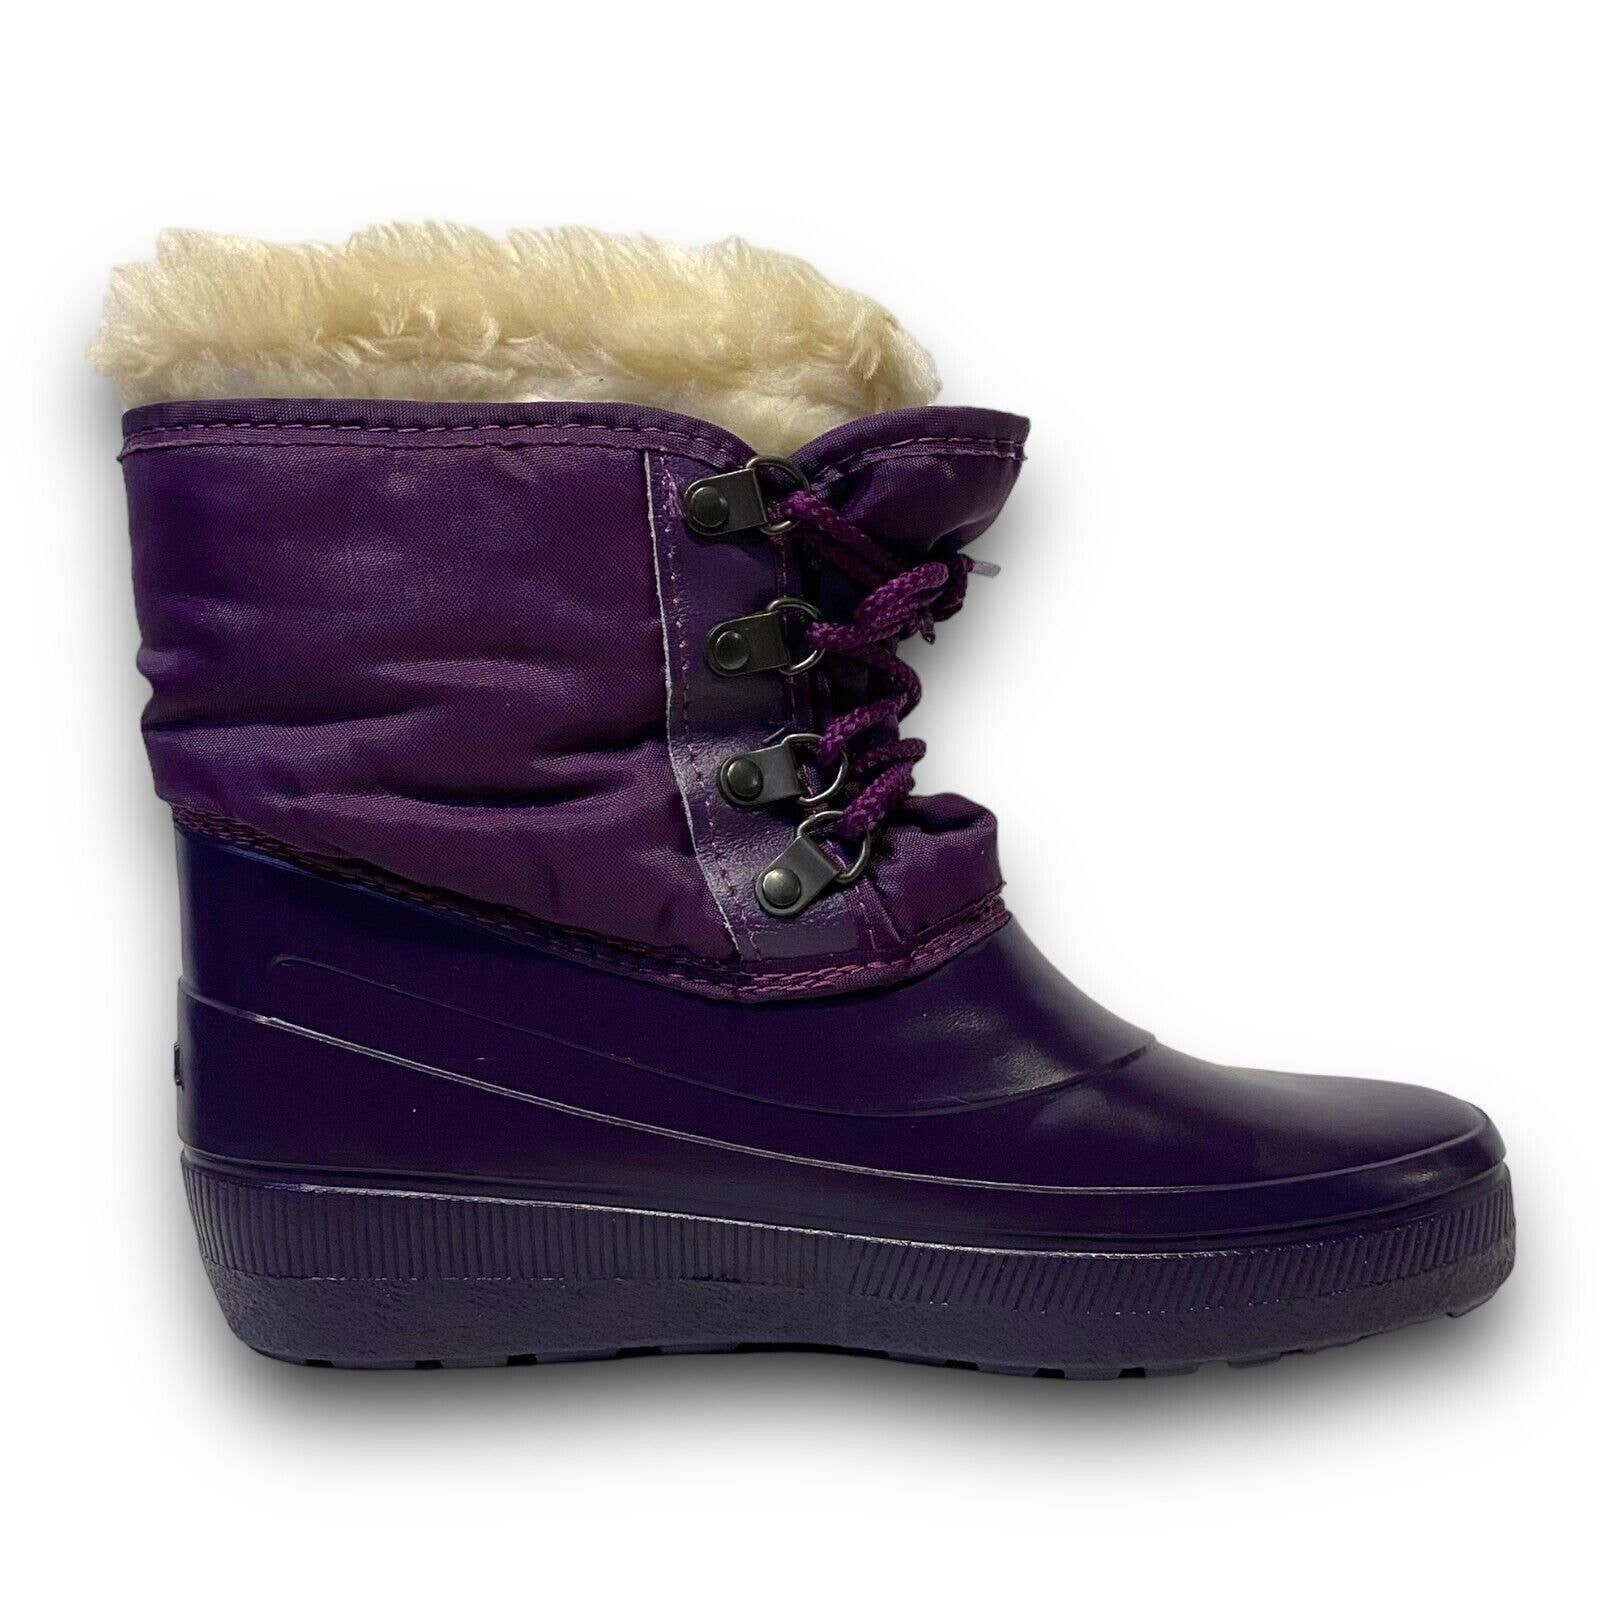 Vintage Vintage Sorel Purple Fur Lined Rubber Winter Rain Snow Boots Size US 5 / IT 35 - 7 Thumbnail